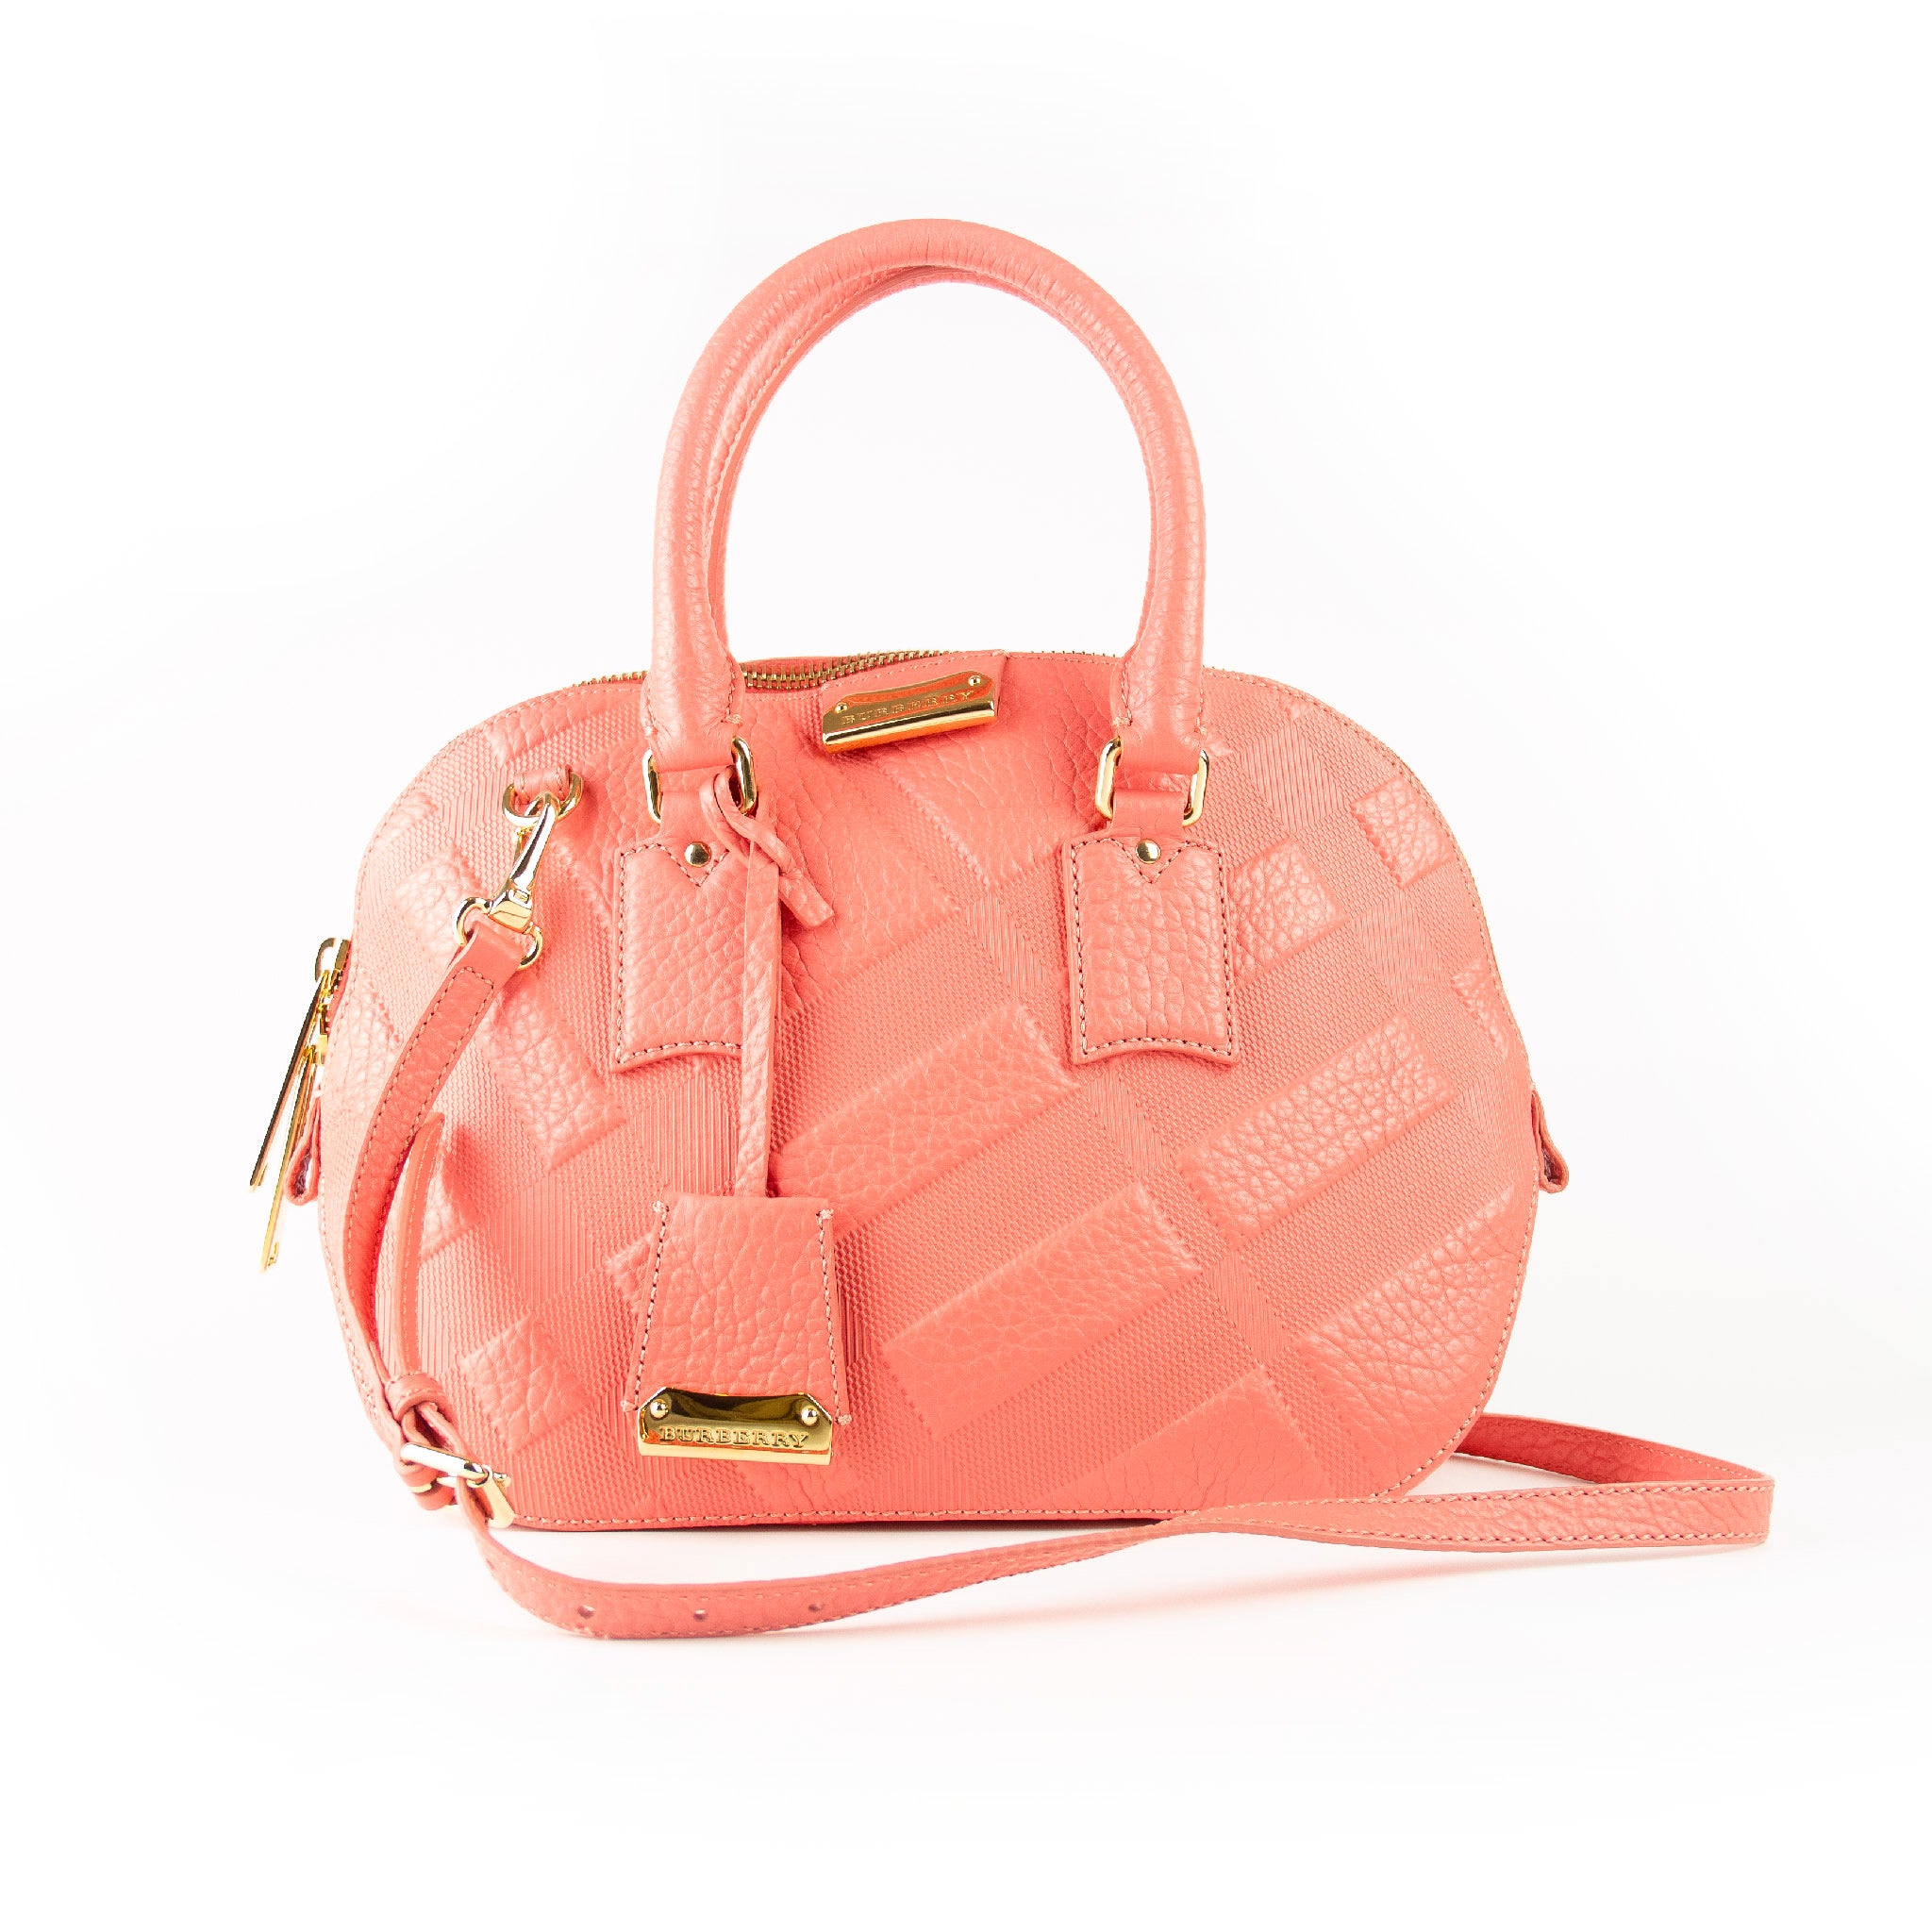 Burberry 2way læder pink håndtaske med rem